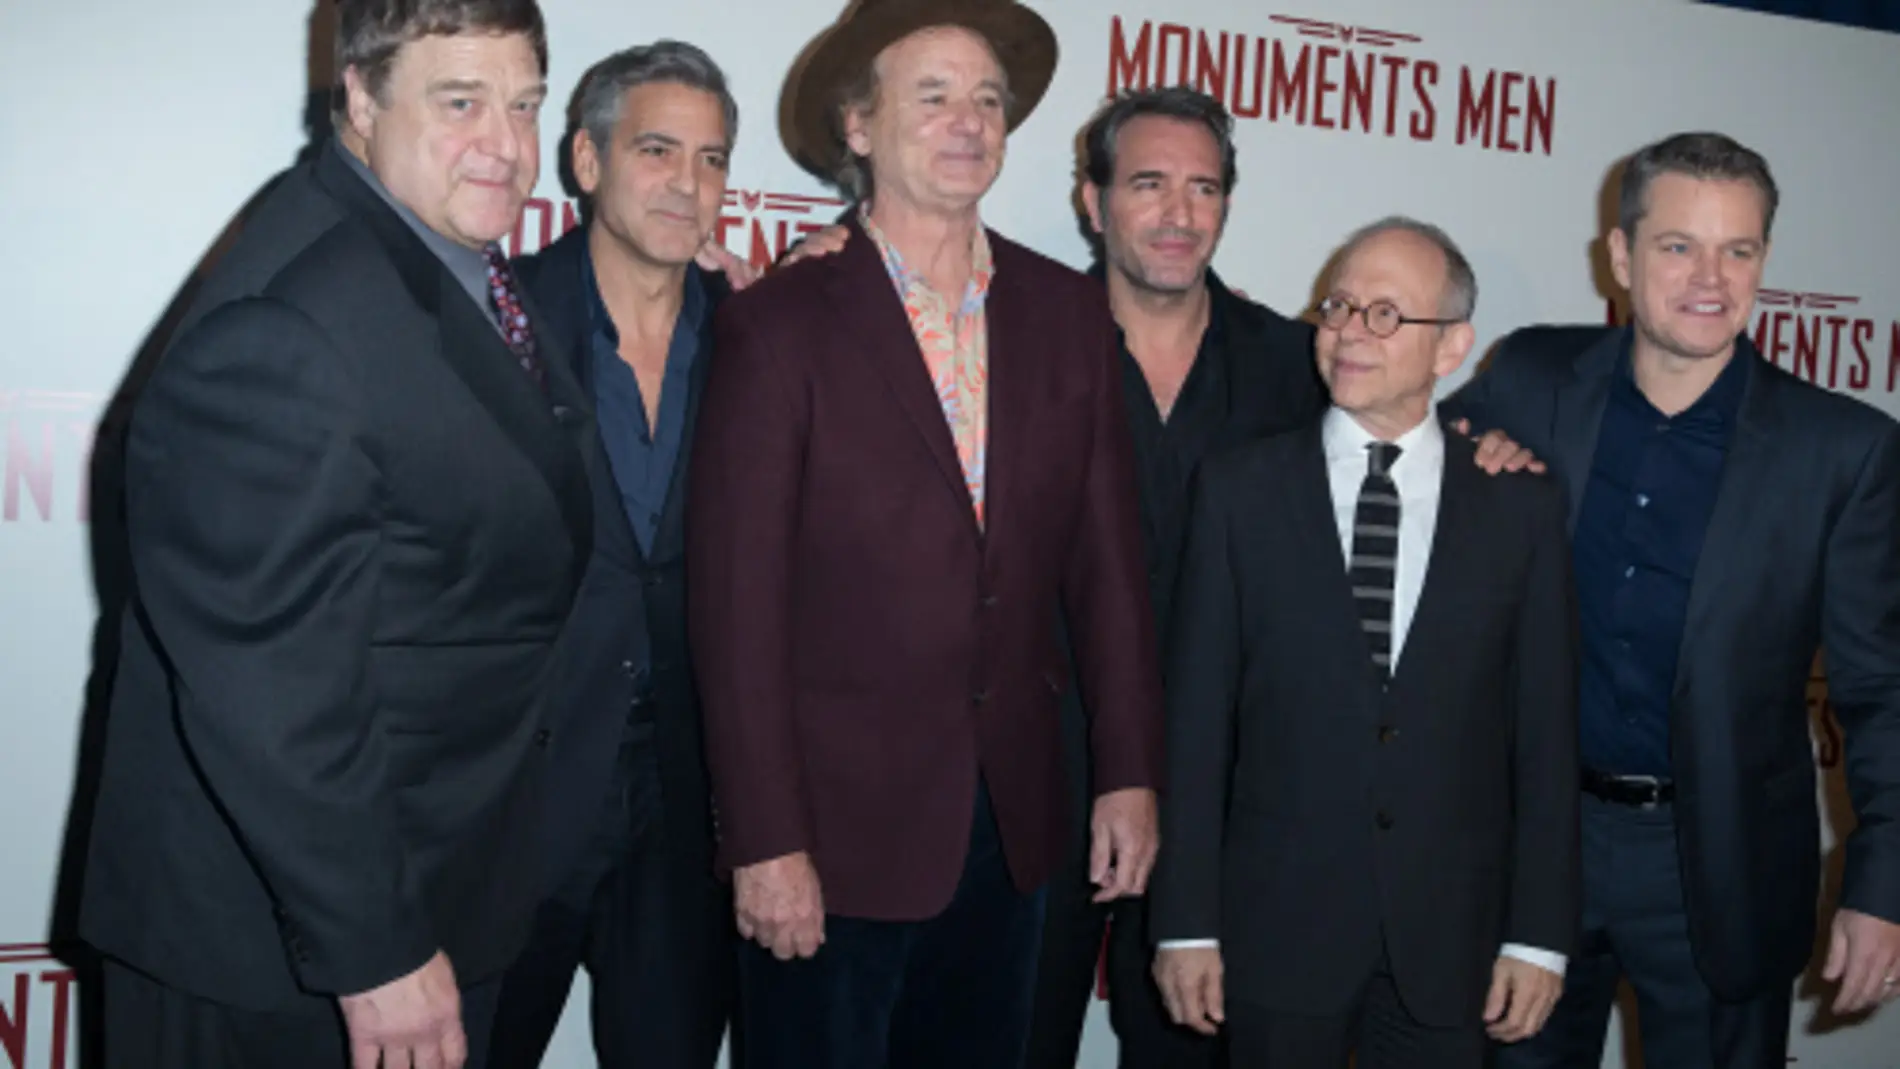 Los 'Monuments Men' en la premiere de París